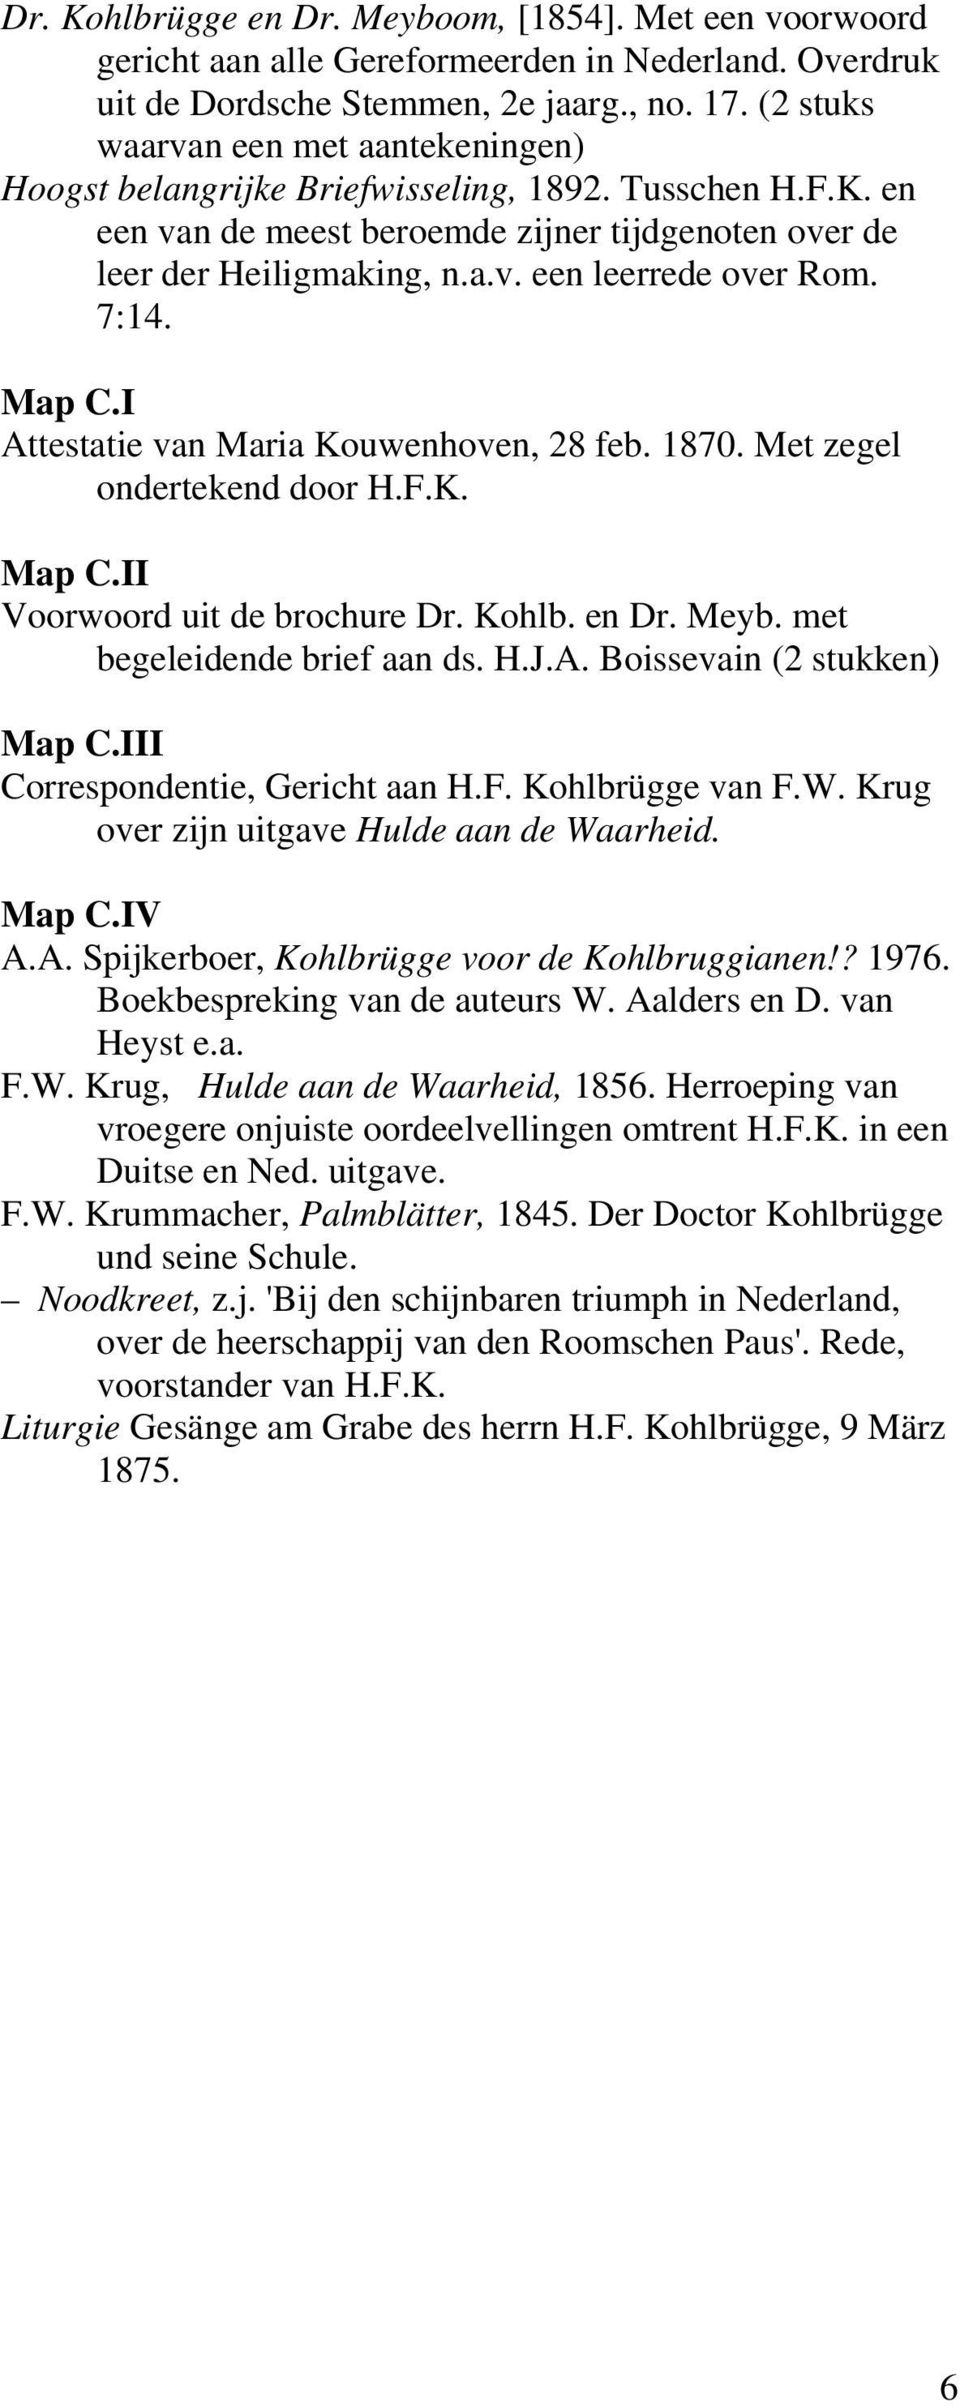 7:14. Map C.I Attestatie van Maria Kouwenhoven, 28 feb. 1870. Met zegel ondertekend door H.F.K. Map C.II Voorwoord uit de brochure Dr. Kohlb. en Dr. Meyb. met begeleidende brief aan ds. H.J.A. Boissevain (2 stukken) Map C.